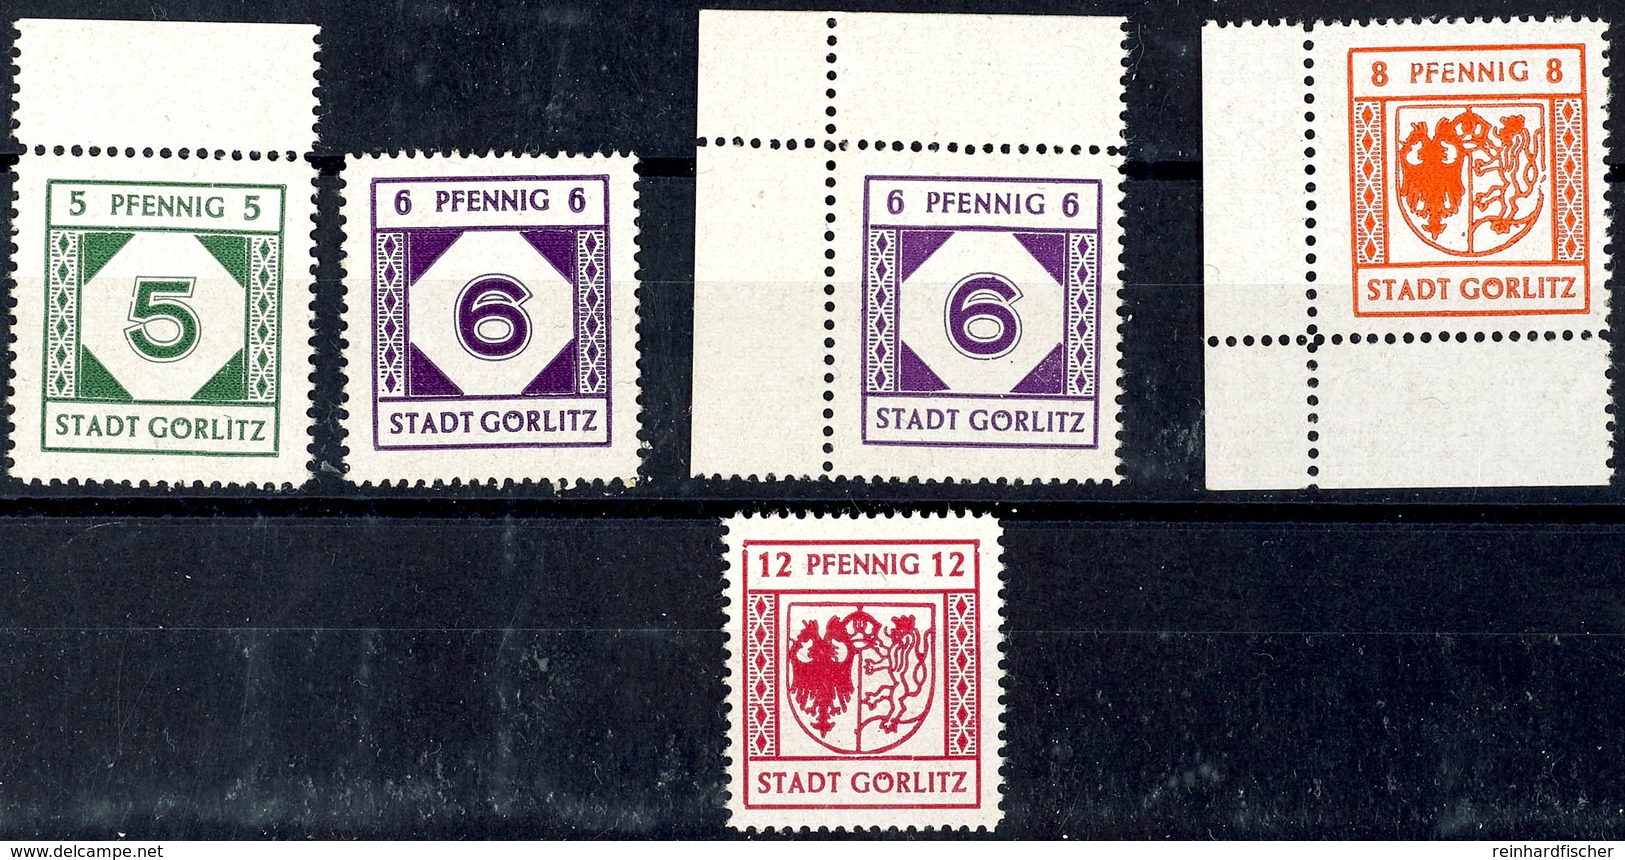 5 Pfg Bis 12 Pfg Freimarken, 6 Pfg In Beiden Farben, Tadellos Postfrisch, Mi. 510.-, Katalog: 9/12y ** - Görlitz